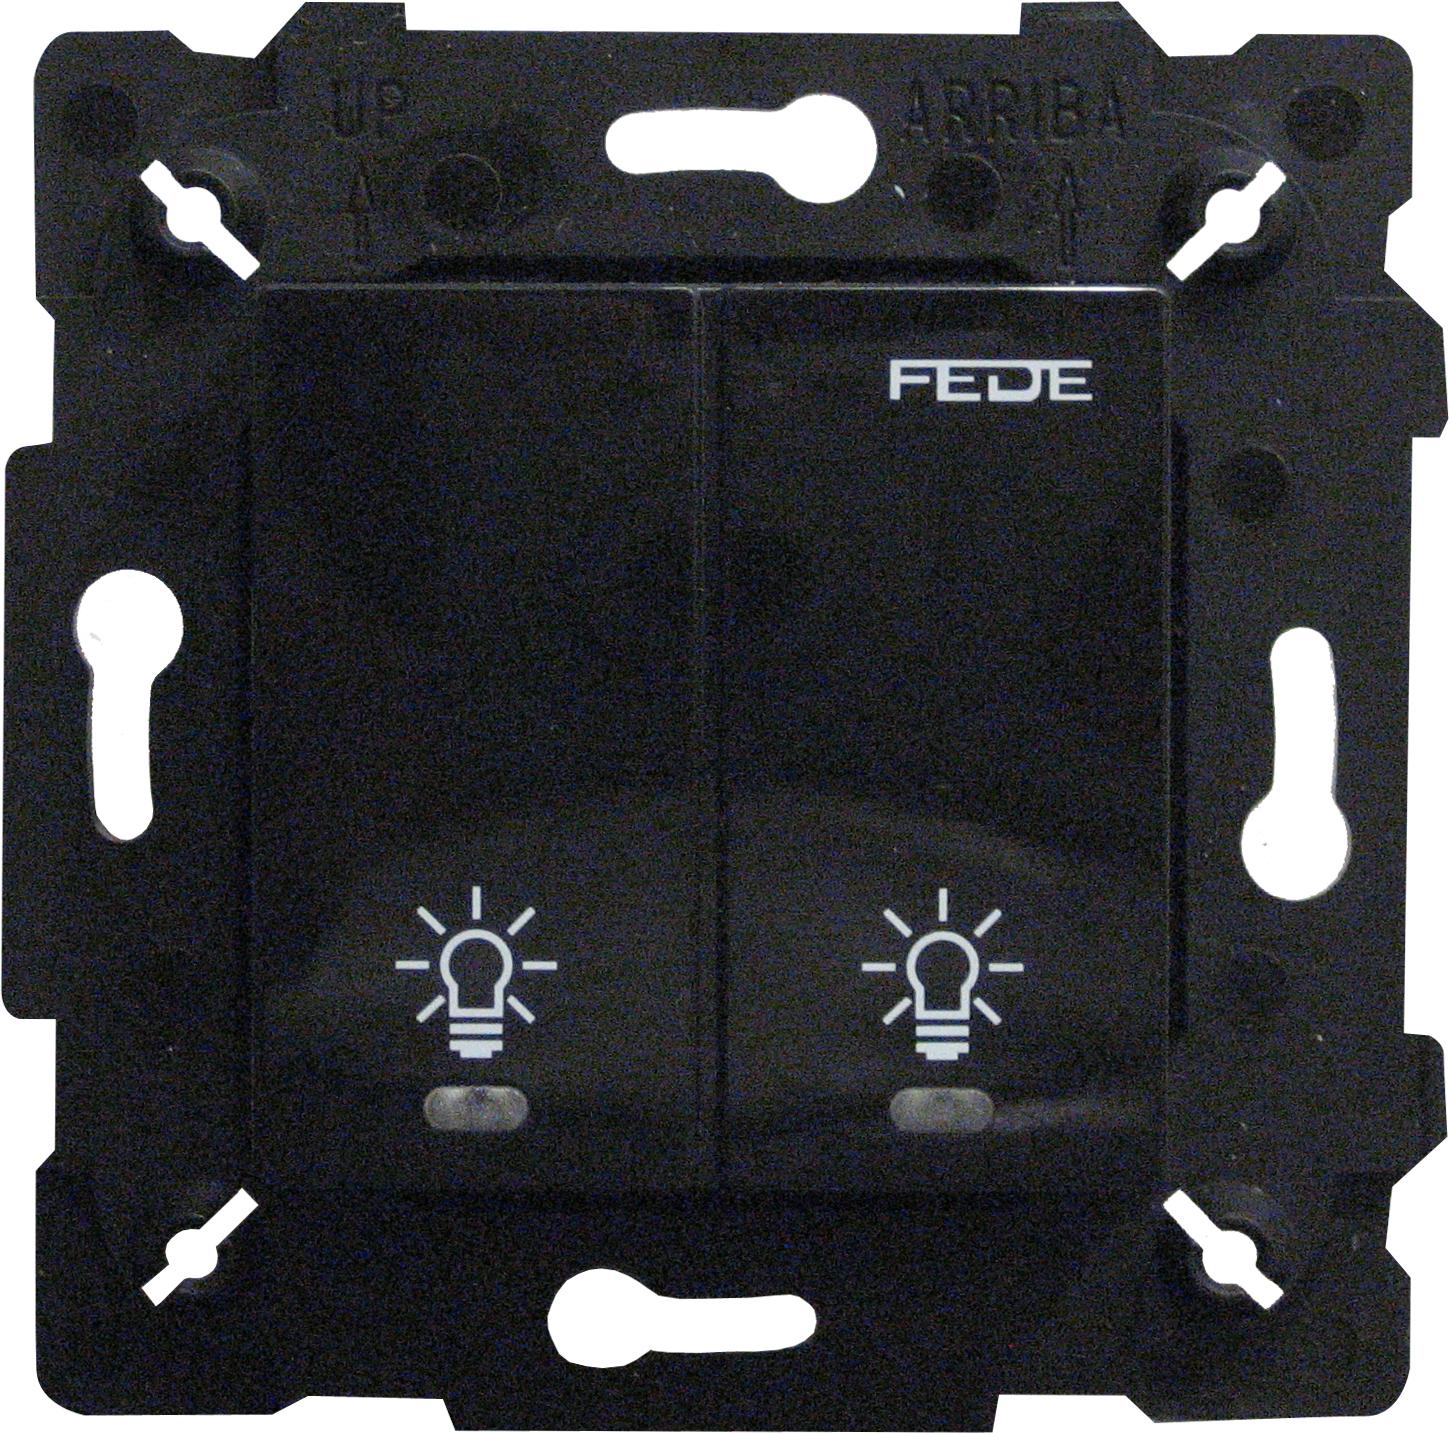  артикул FD28602-M название FEDE Черный Сенсорный двухклавишный выключатель 2х600 Вт с подсветкой Black (Negro)